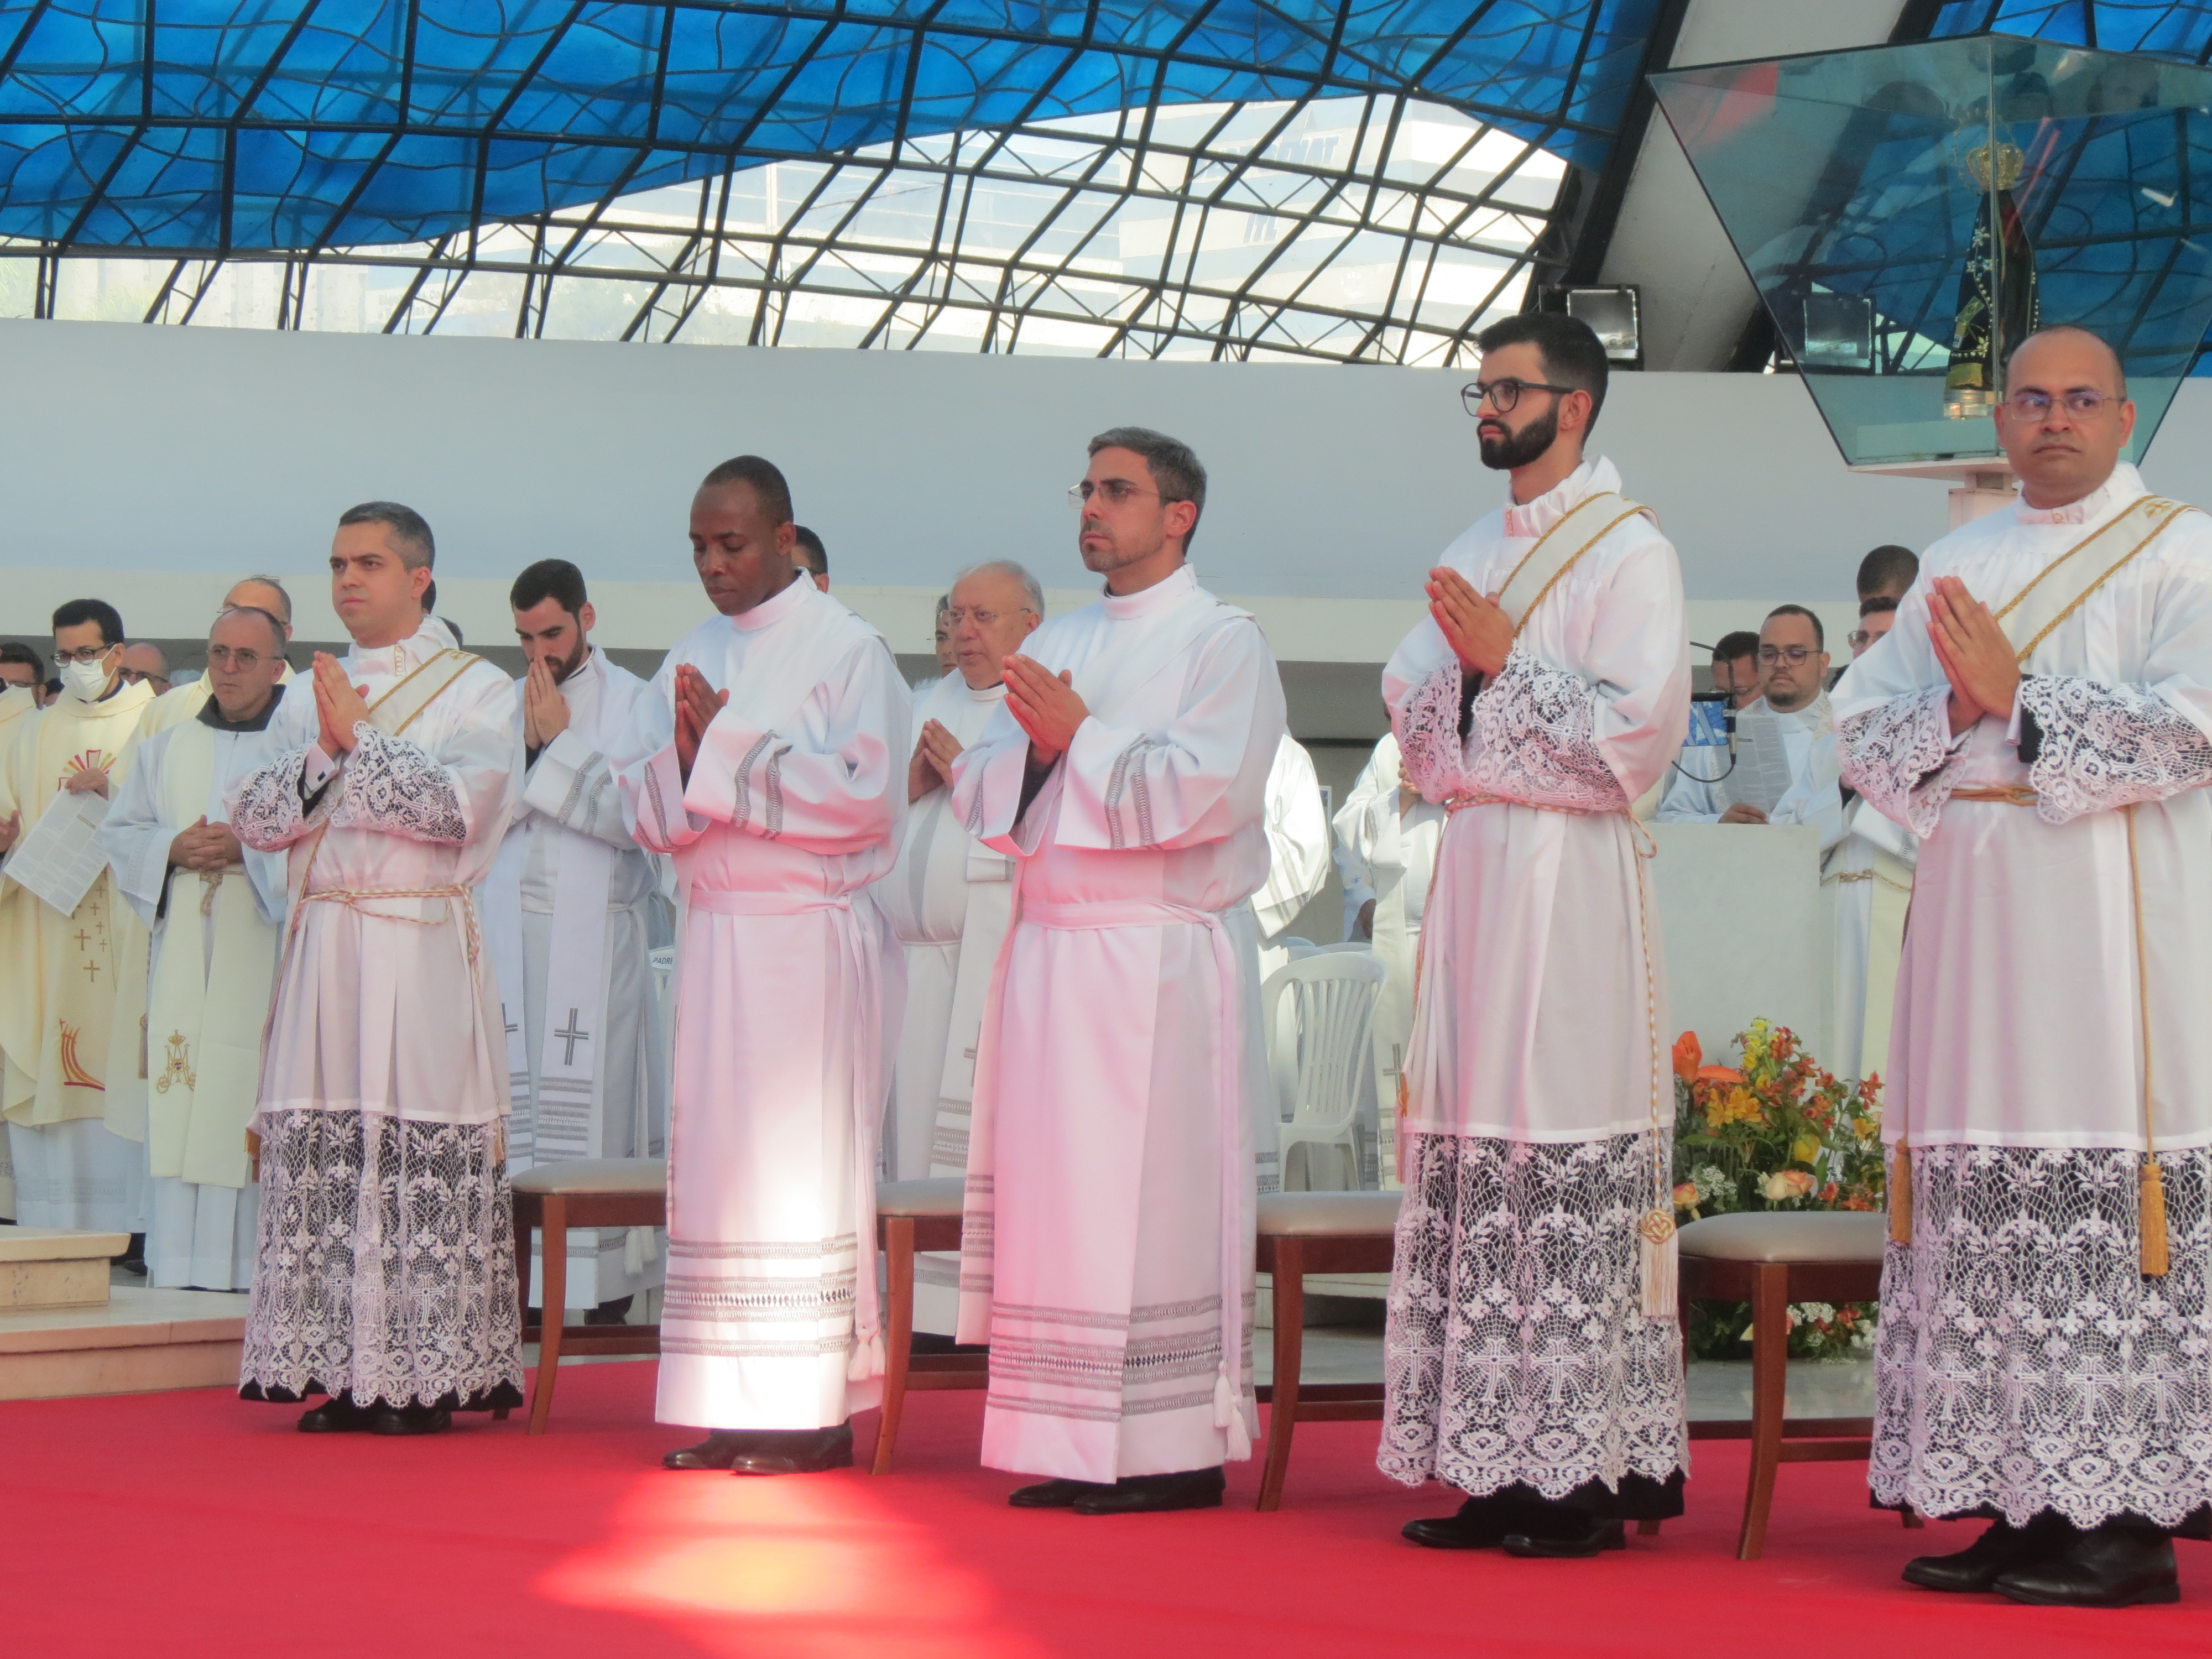 Xnxx13 - SeminÃ¡rio Maior de BrasÃ­lia - Nossa Senhora de FÃ¡tima - OrdenaÃ§Ã£o  presbiteral de 9 novos padres para a Arquidiocese de BrasÃ­lia